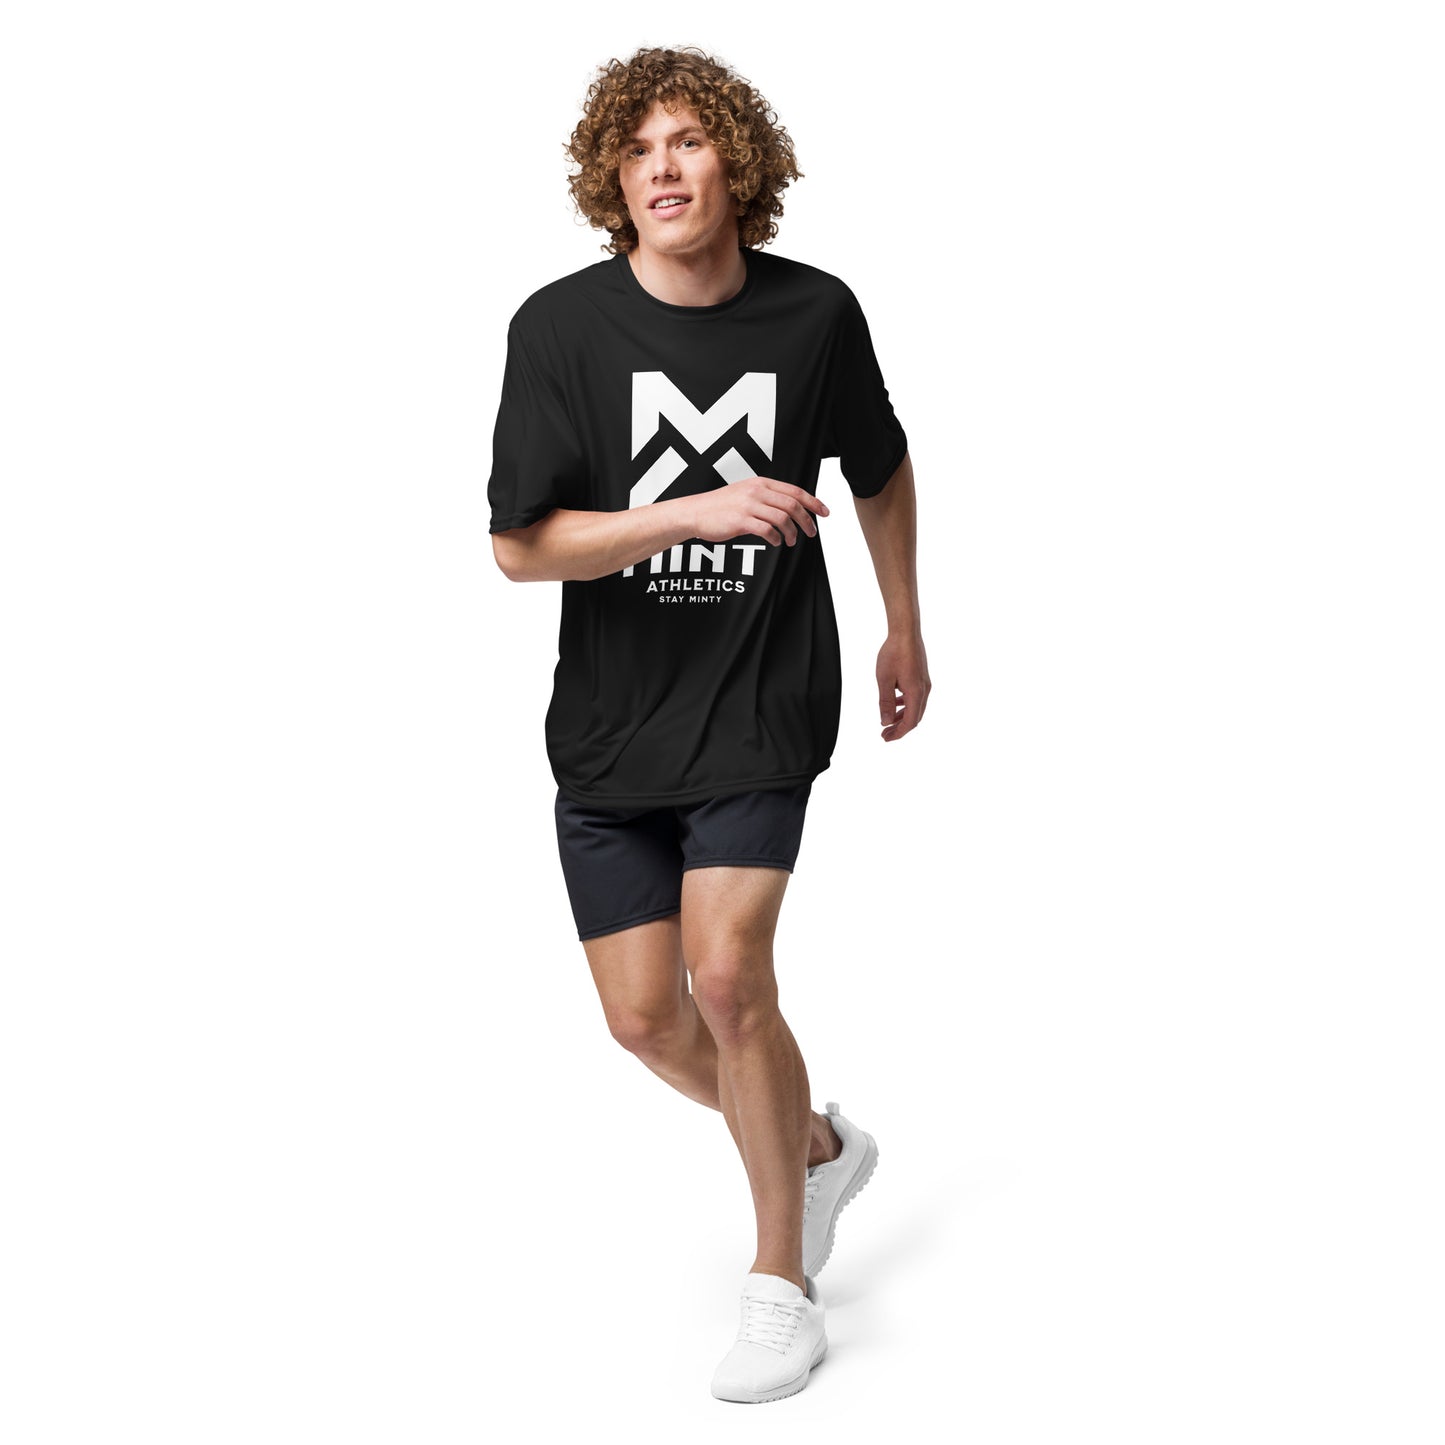 Mint Athletics Dri-Fit Shirt